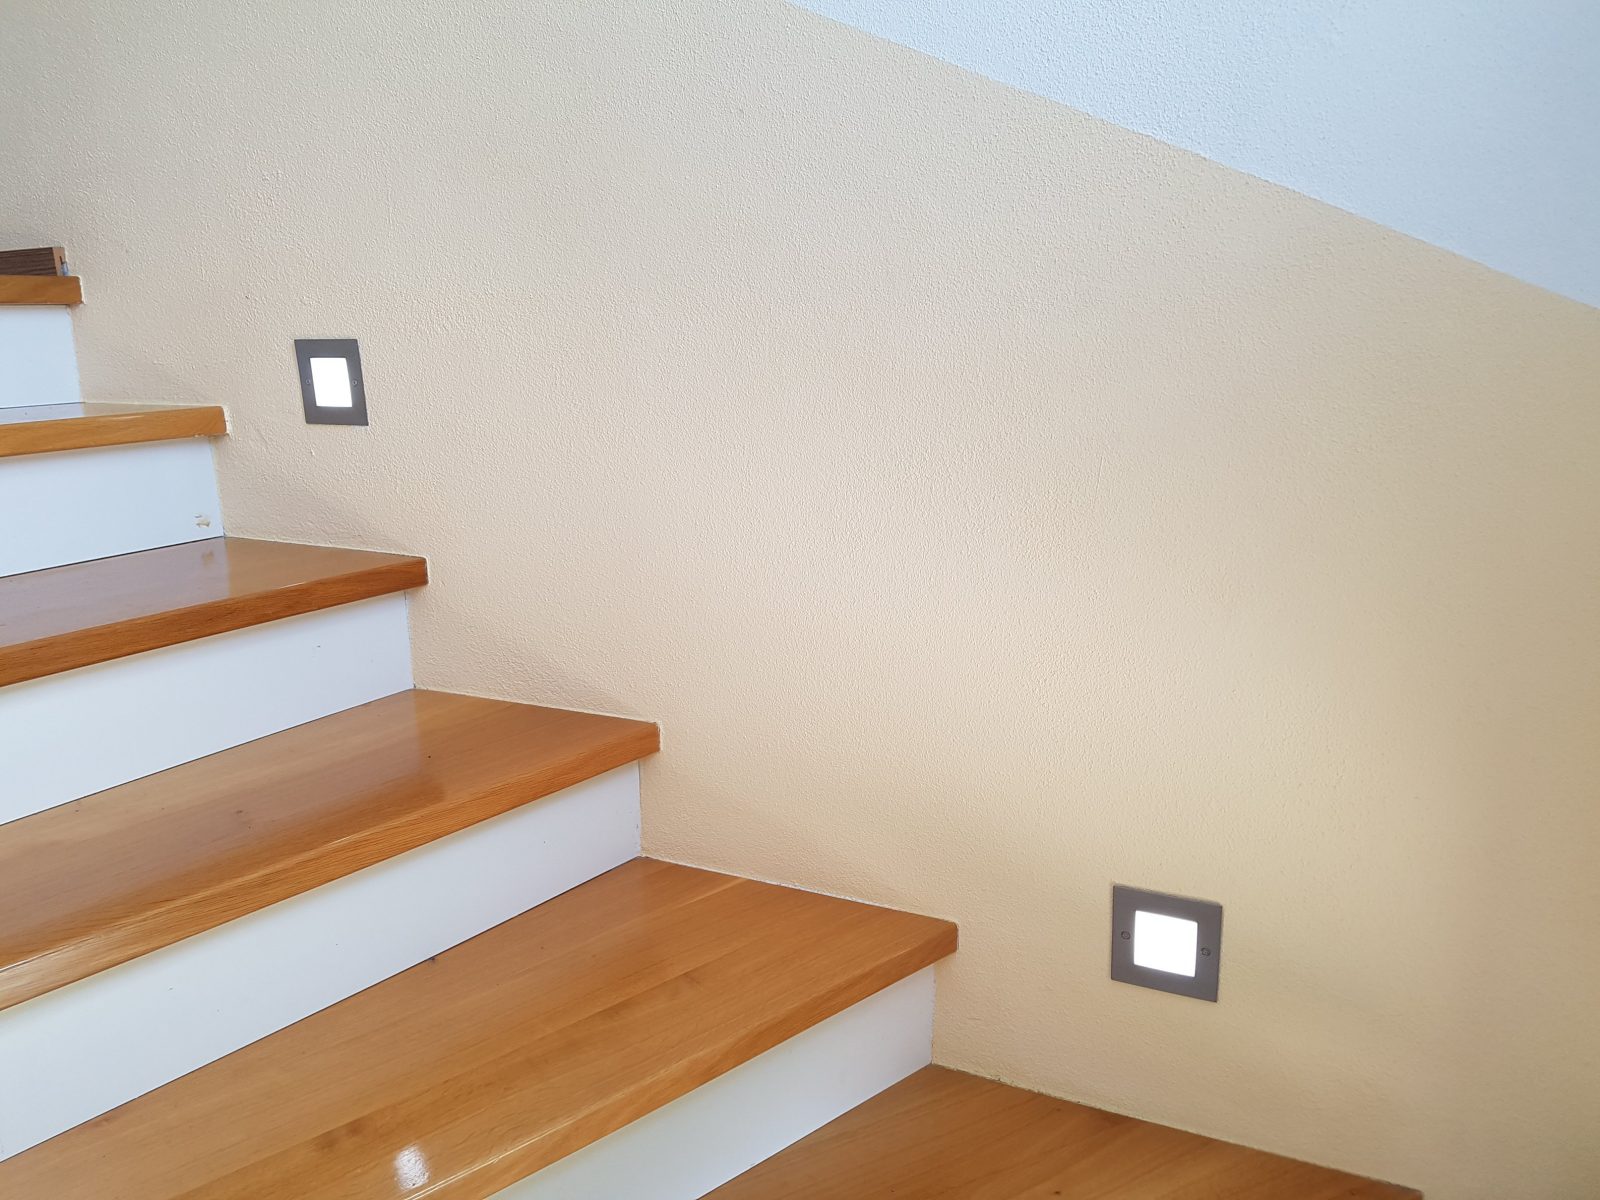 Led Treppenbeleuchtung  Led Flurbeleuchtung  Led Orientierungslicht von Led Treppenlicht Mit Bewegungsmelder Bild